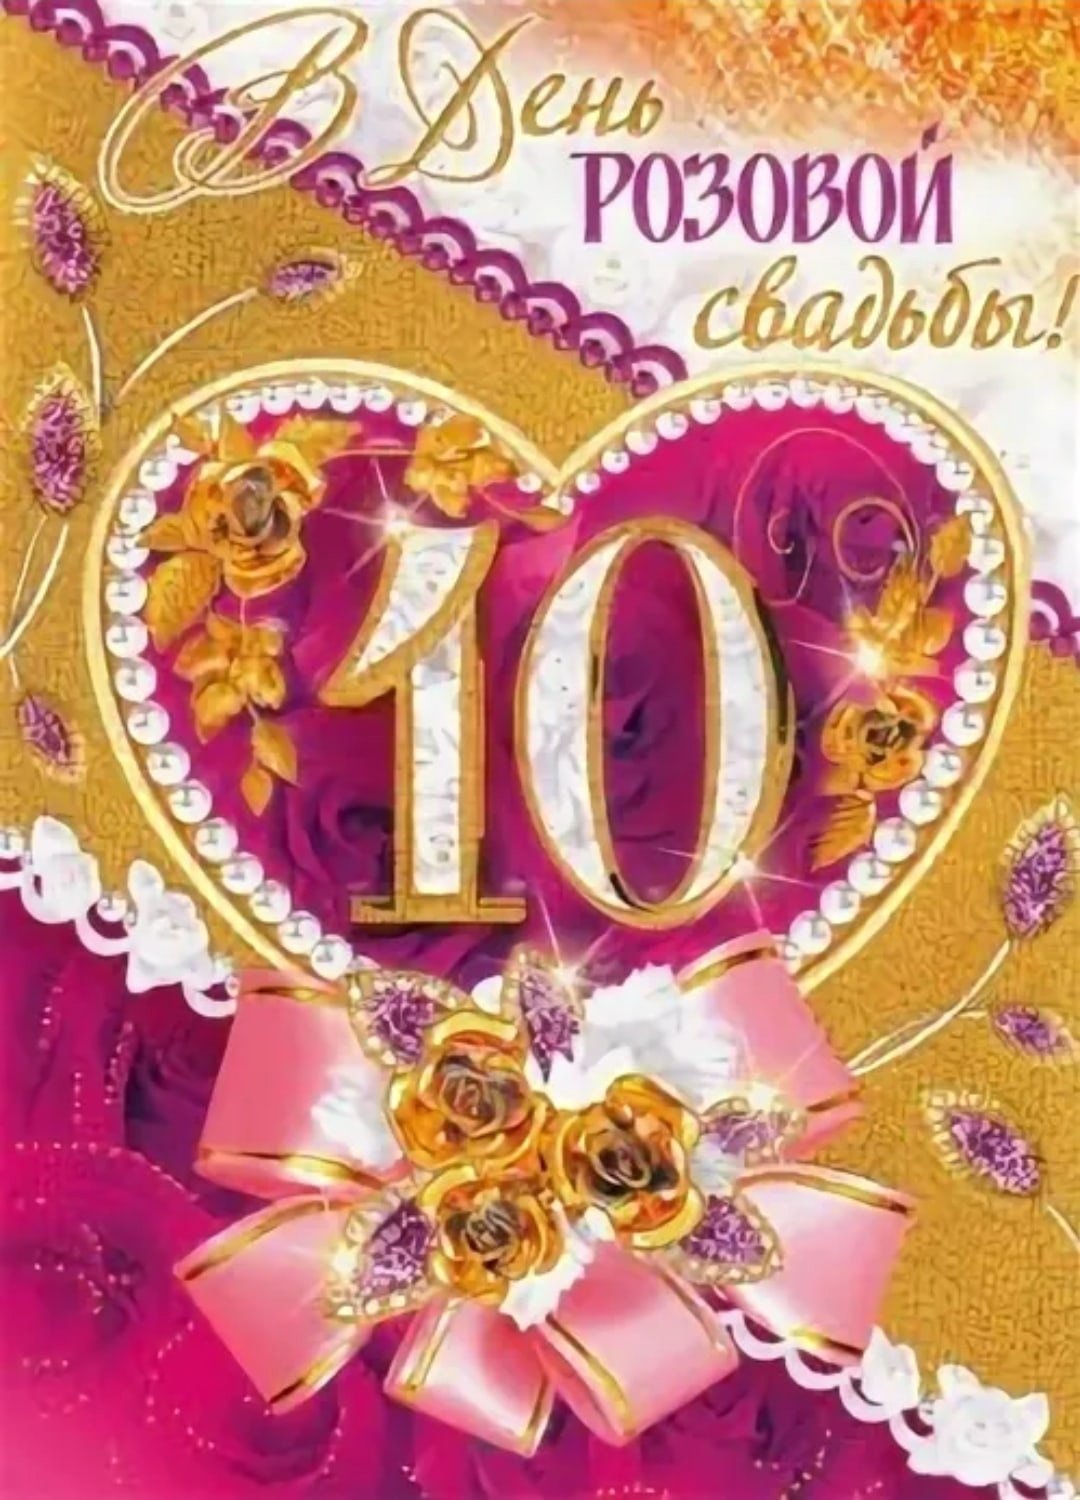 Картинки с годовщиной 10 лет. Розовая свадьба. 10 Лет свадьбы. Поздравление с 10 летием свадьбы. С годовщиной свадьбы десять лет.